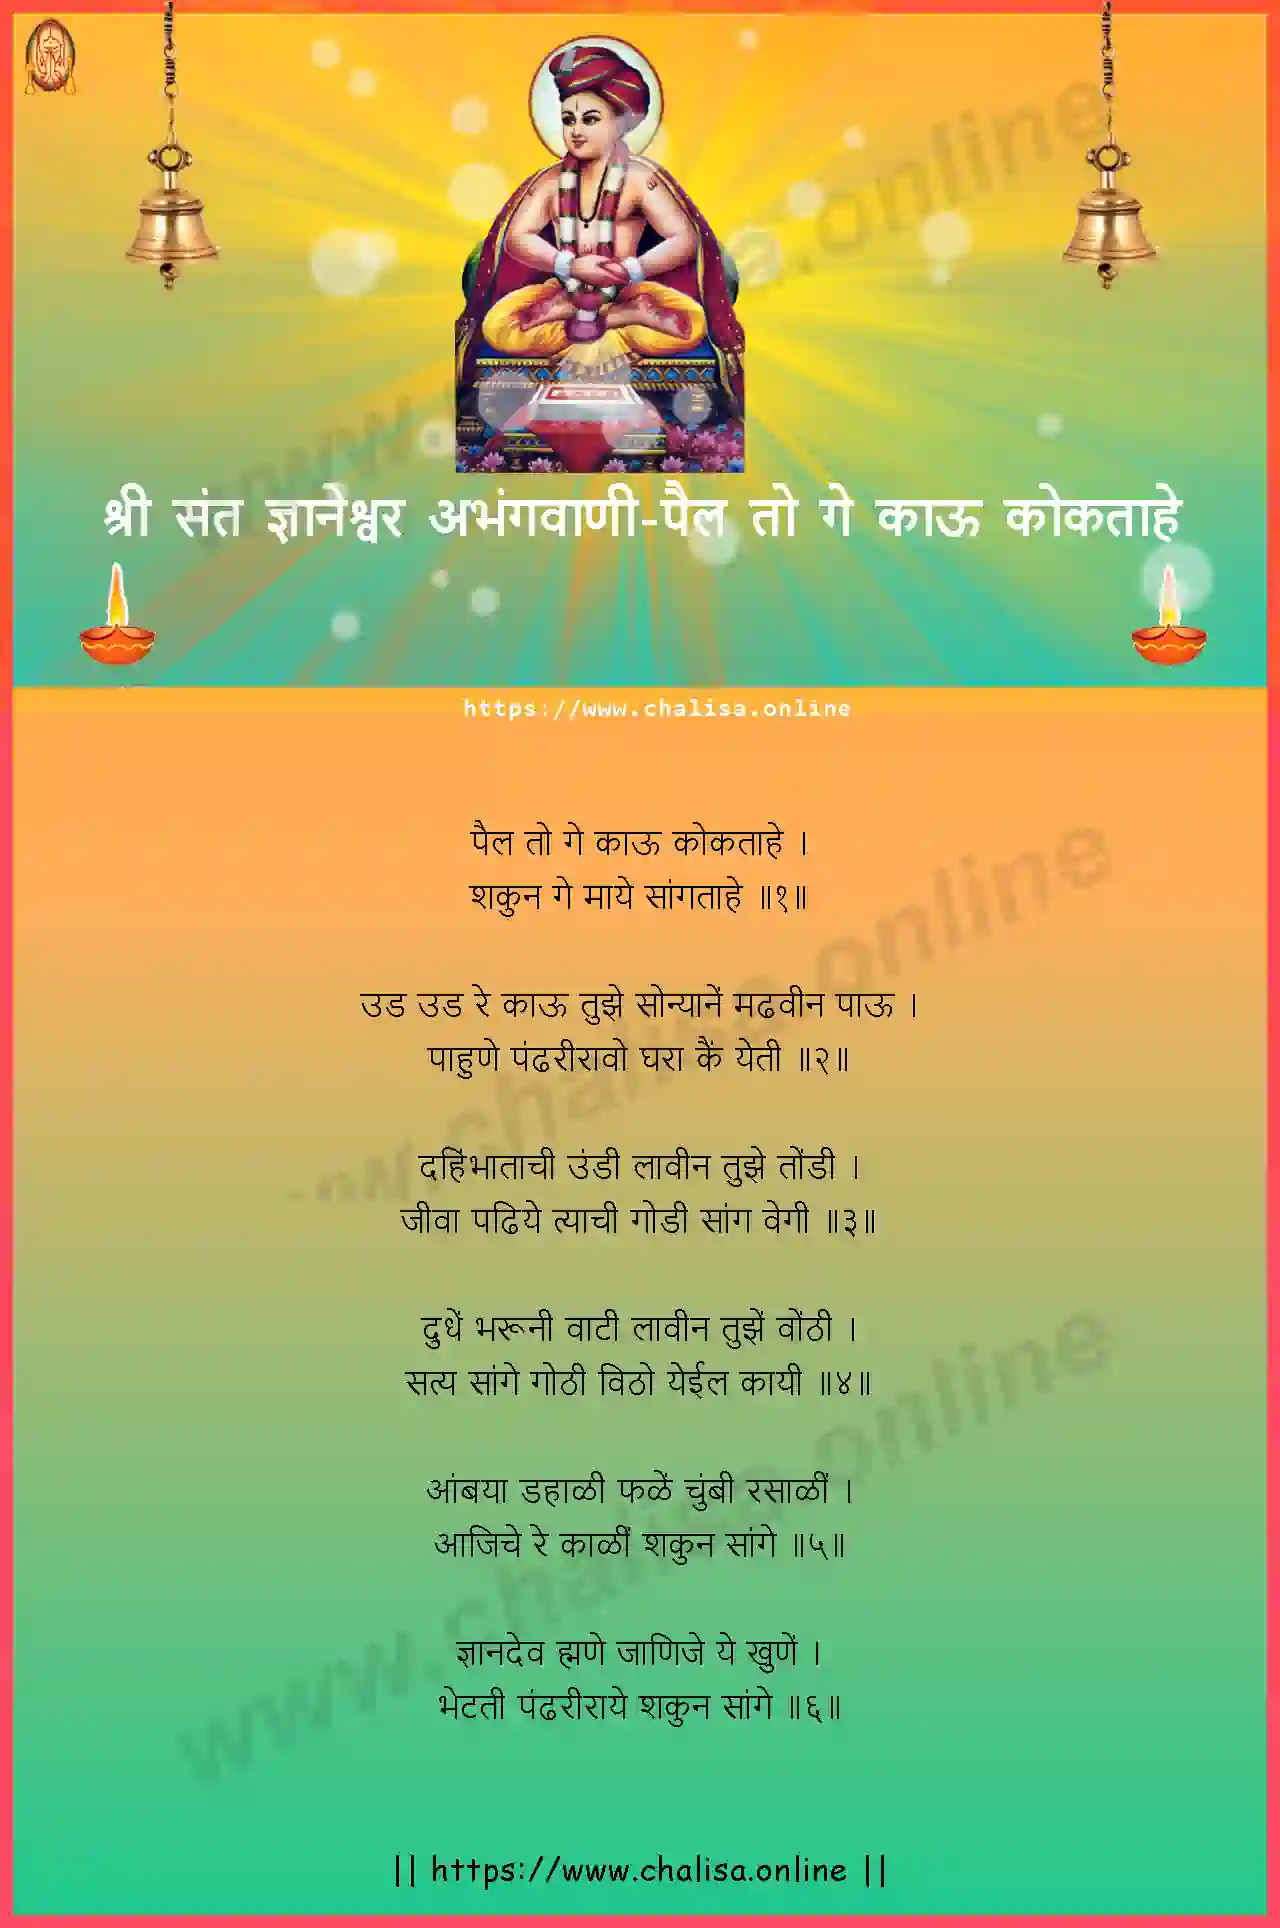 pail-to-ge-kau-shri-sant-dnyaneshwar-abhang-marathi-lyrics-download